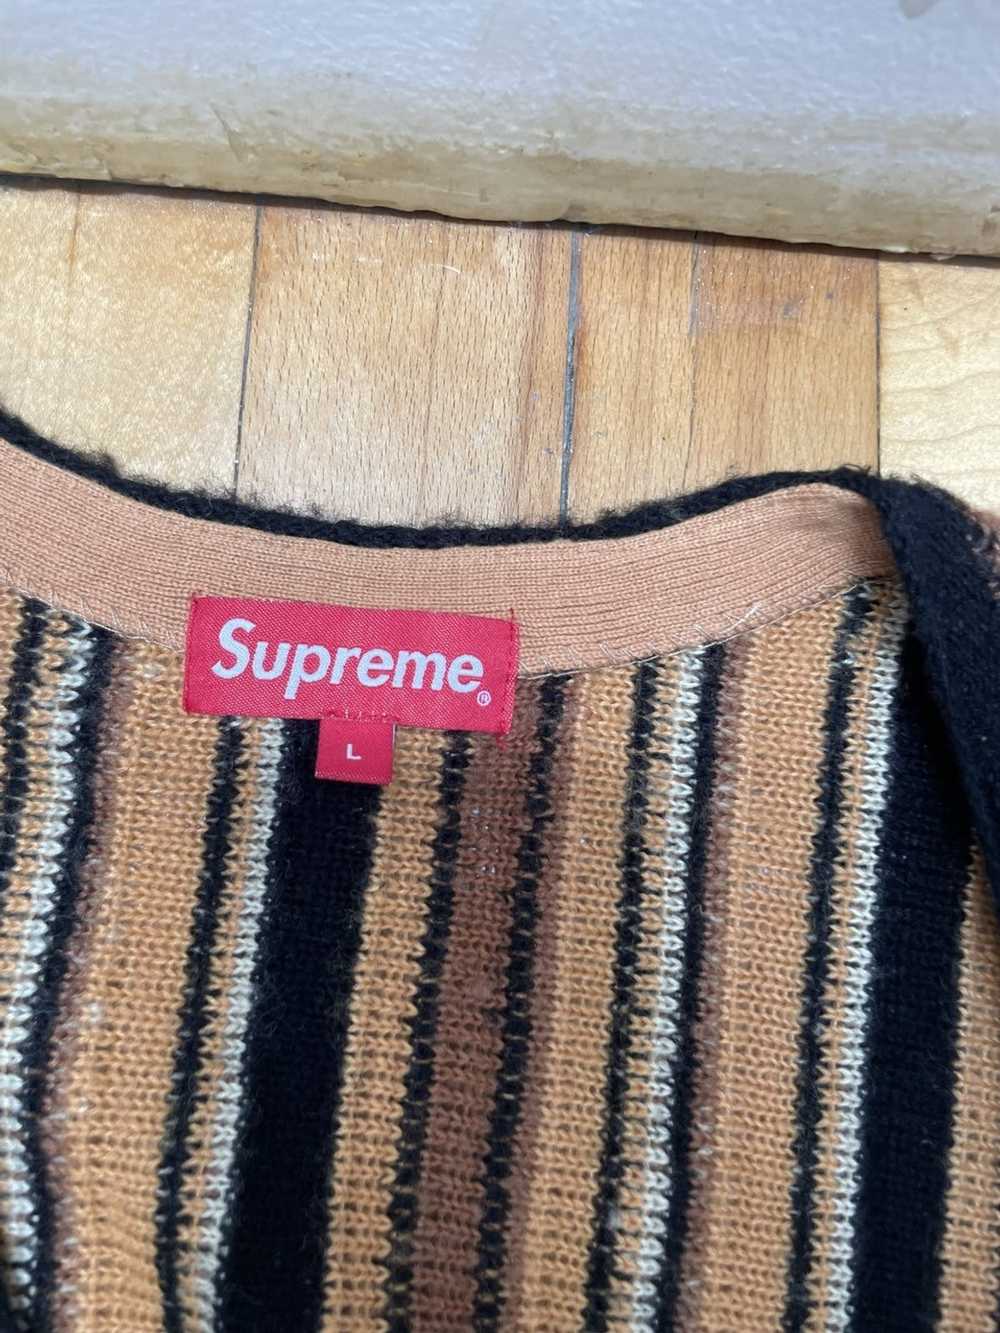 Supreme Supreme Stripped Sweater Vest Brown (L) - image 3